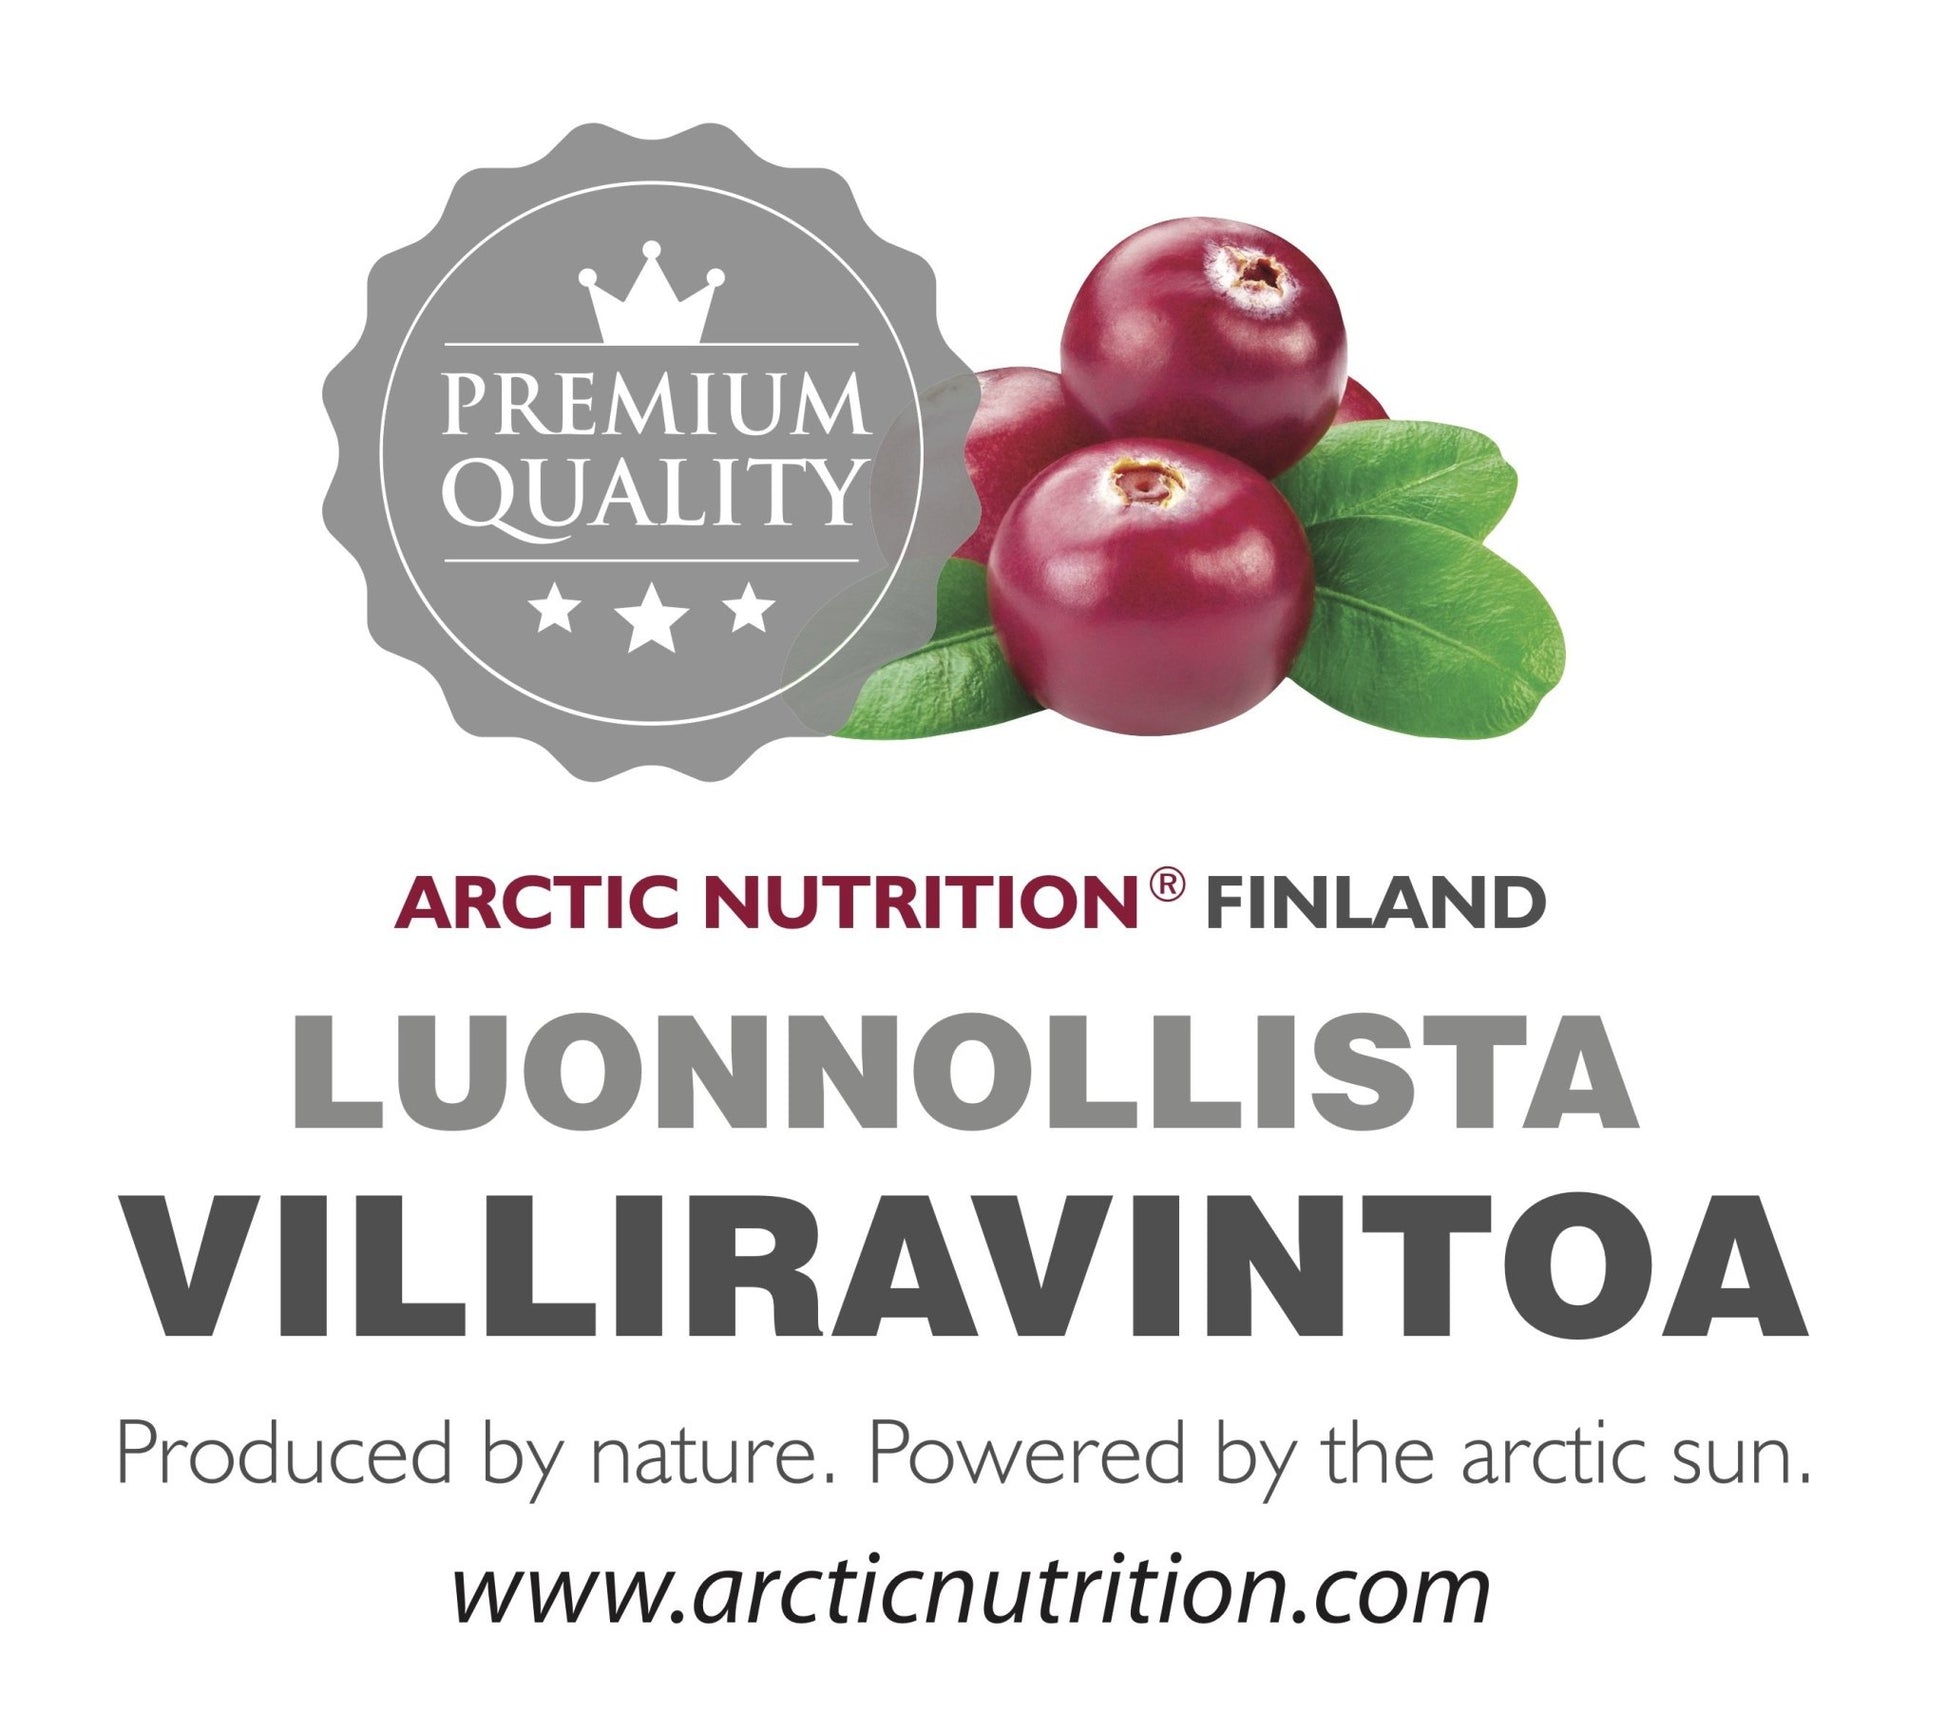 Arctic Nutrition Elixir - vitamiini- ja antioksidanttipommi marjoista ja yrteistä - 4Organic Store